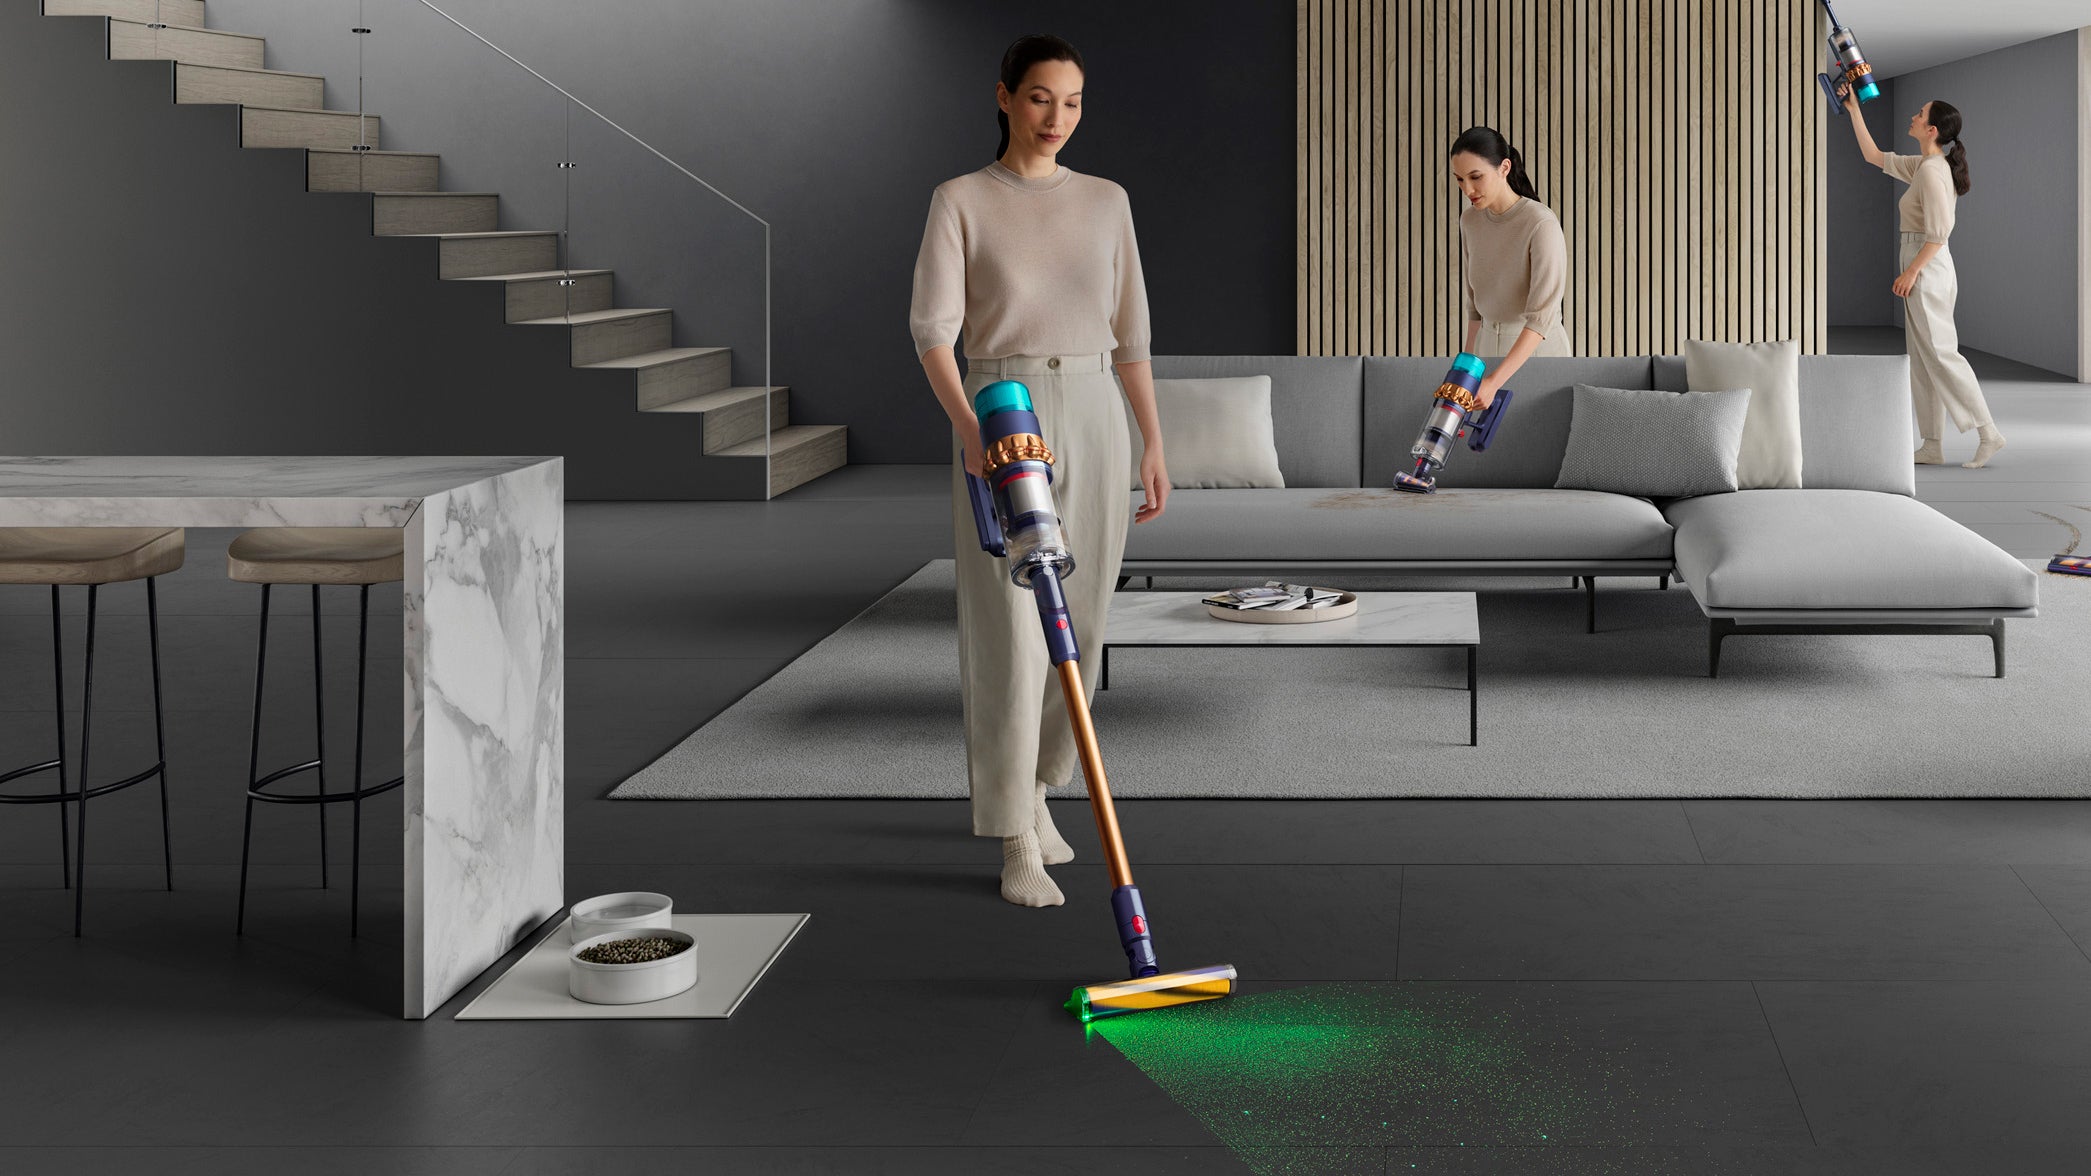 يستخدم العديد من الأشخاص المكنسة اللاسلكية Dyson Gen5detect لتنظيف أجزاء مختلفة من المنزل بما في ذلك الأرضية والأريكة ومنطقة أعلى يصعب الوصول إليها.